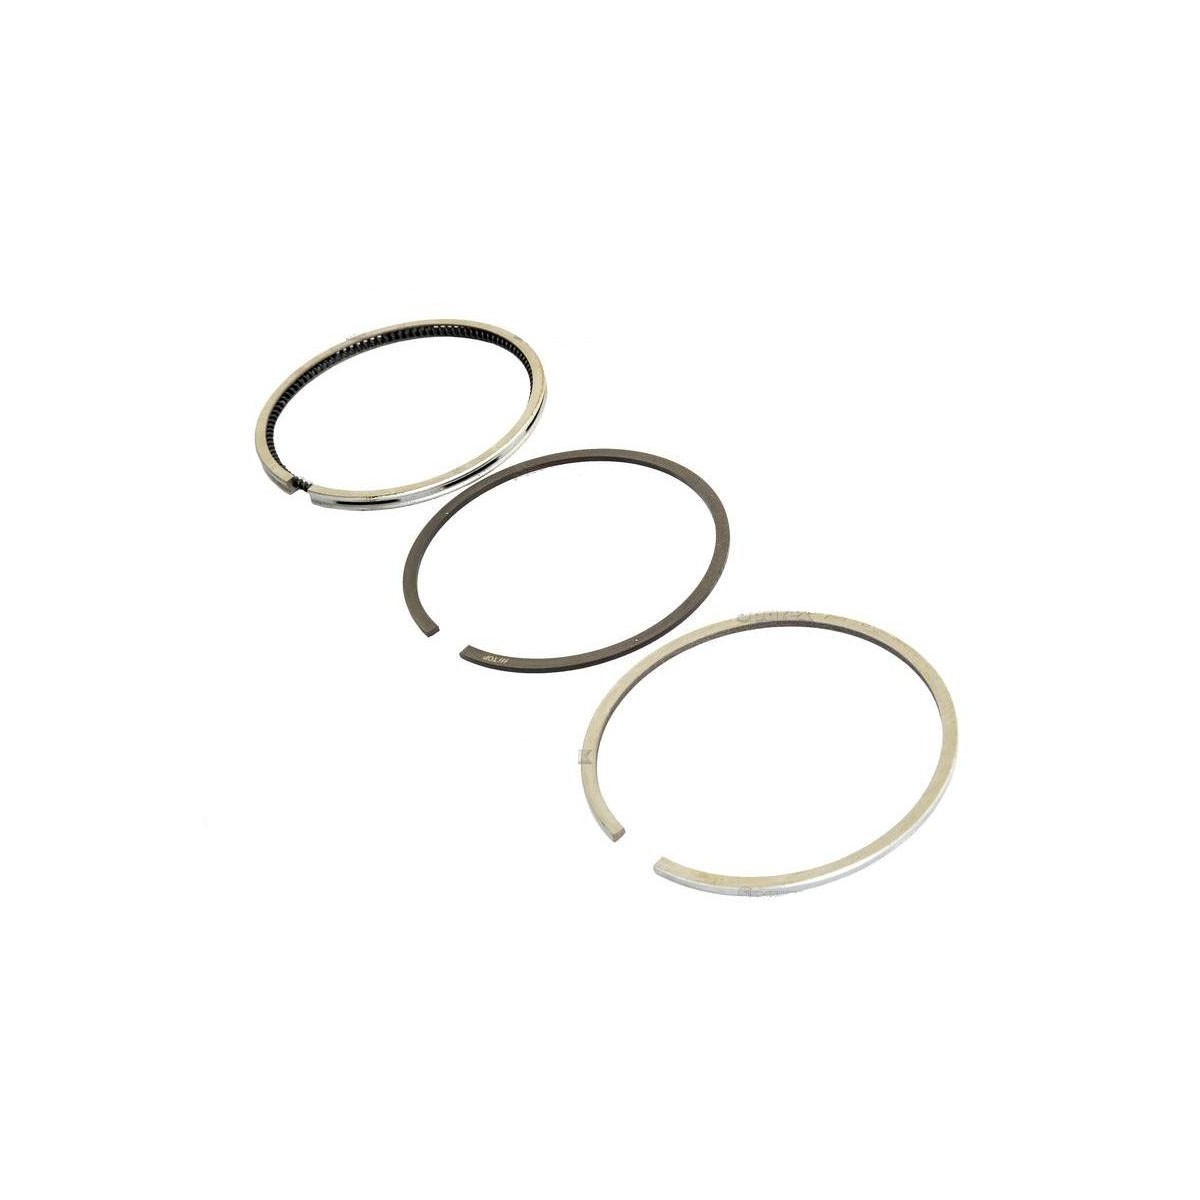 Piston ring set - Kubota 15271-21050, B5100, B5200, B7100